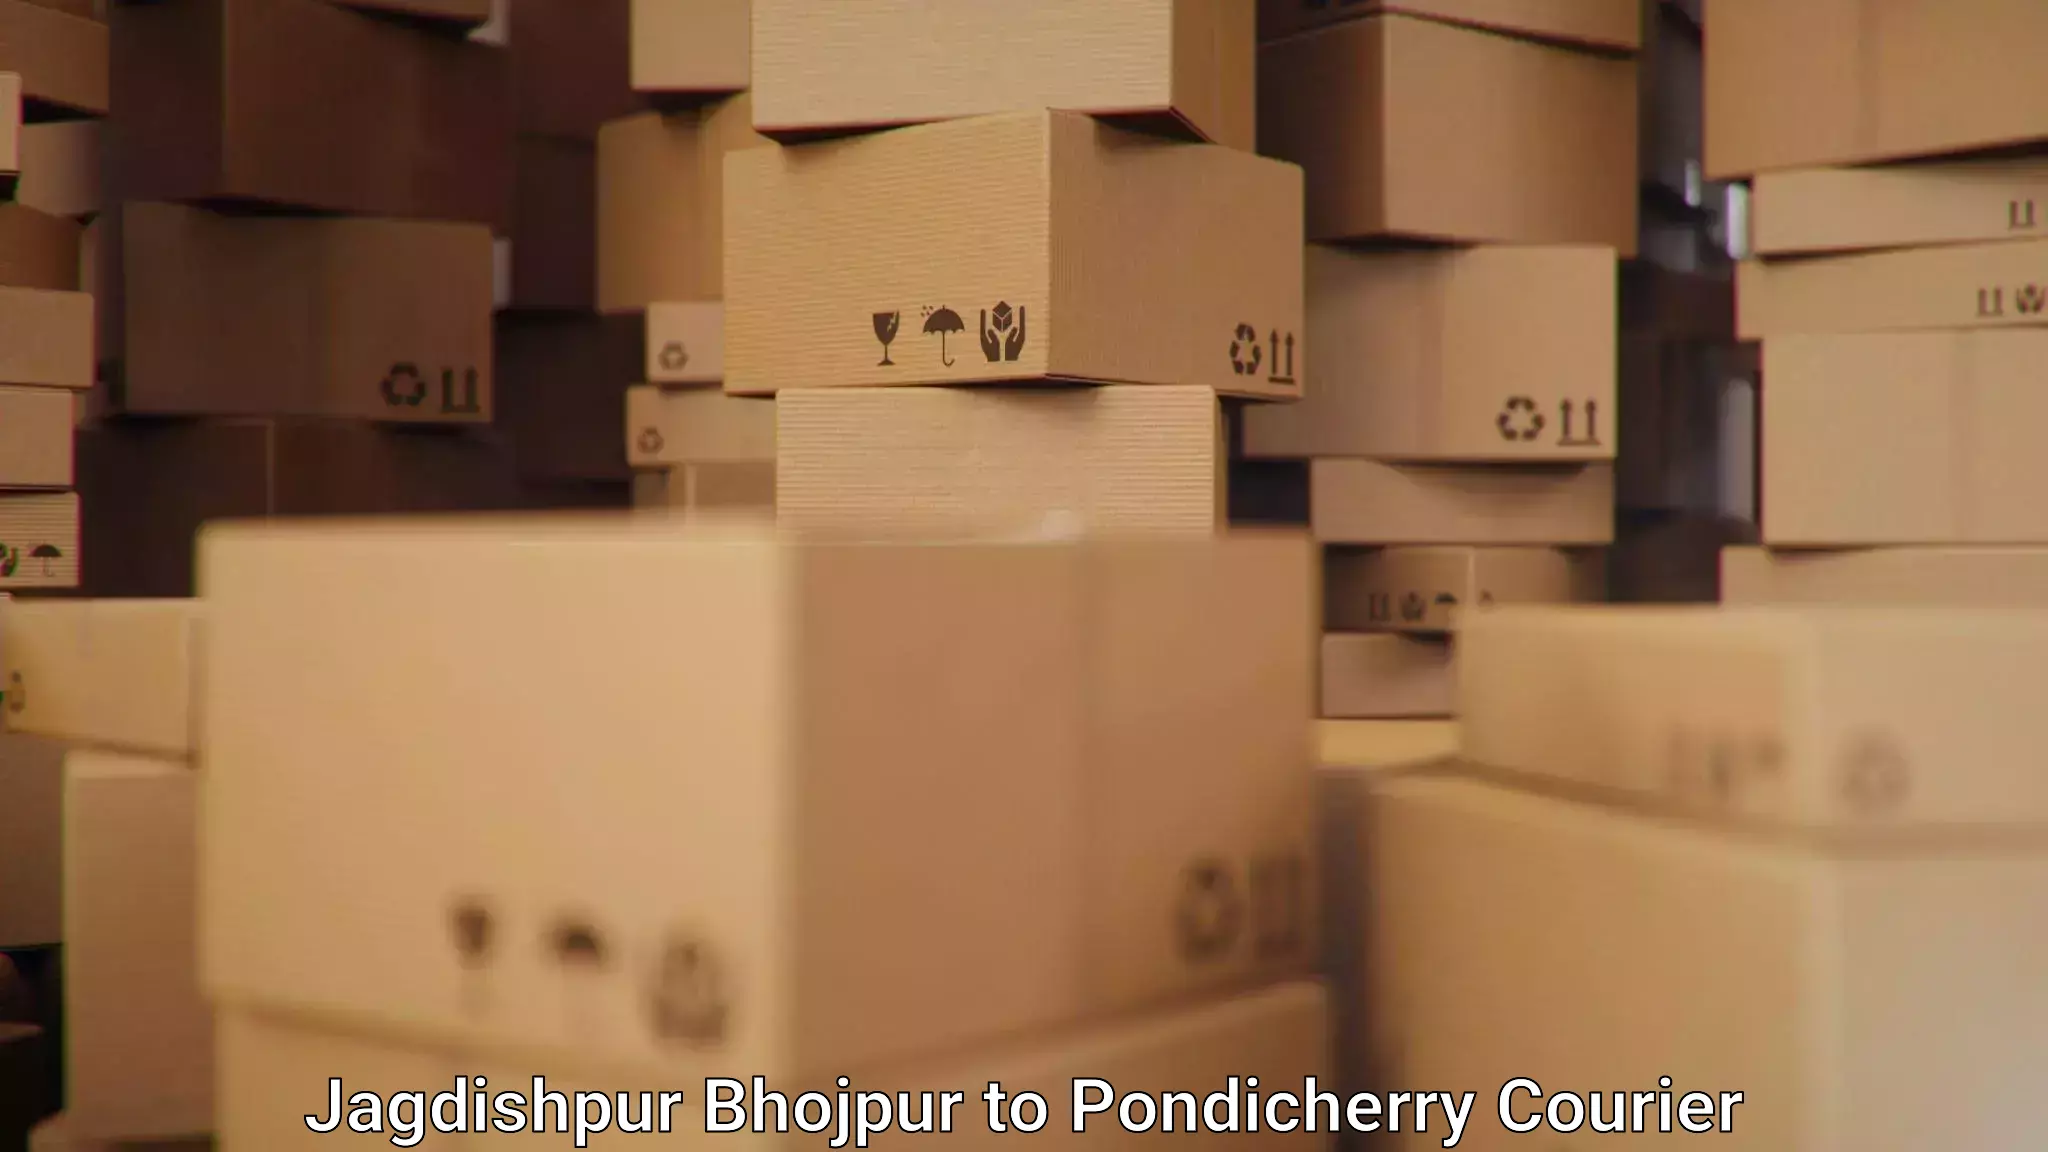 Efficient parcel service in Jagdishpur Bhojpur to NIT Puducherry